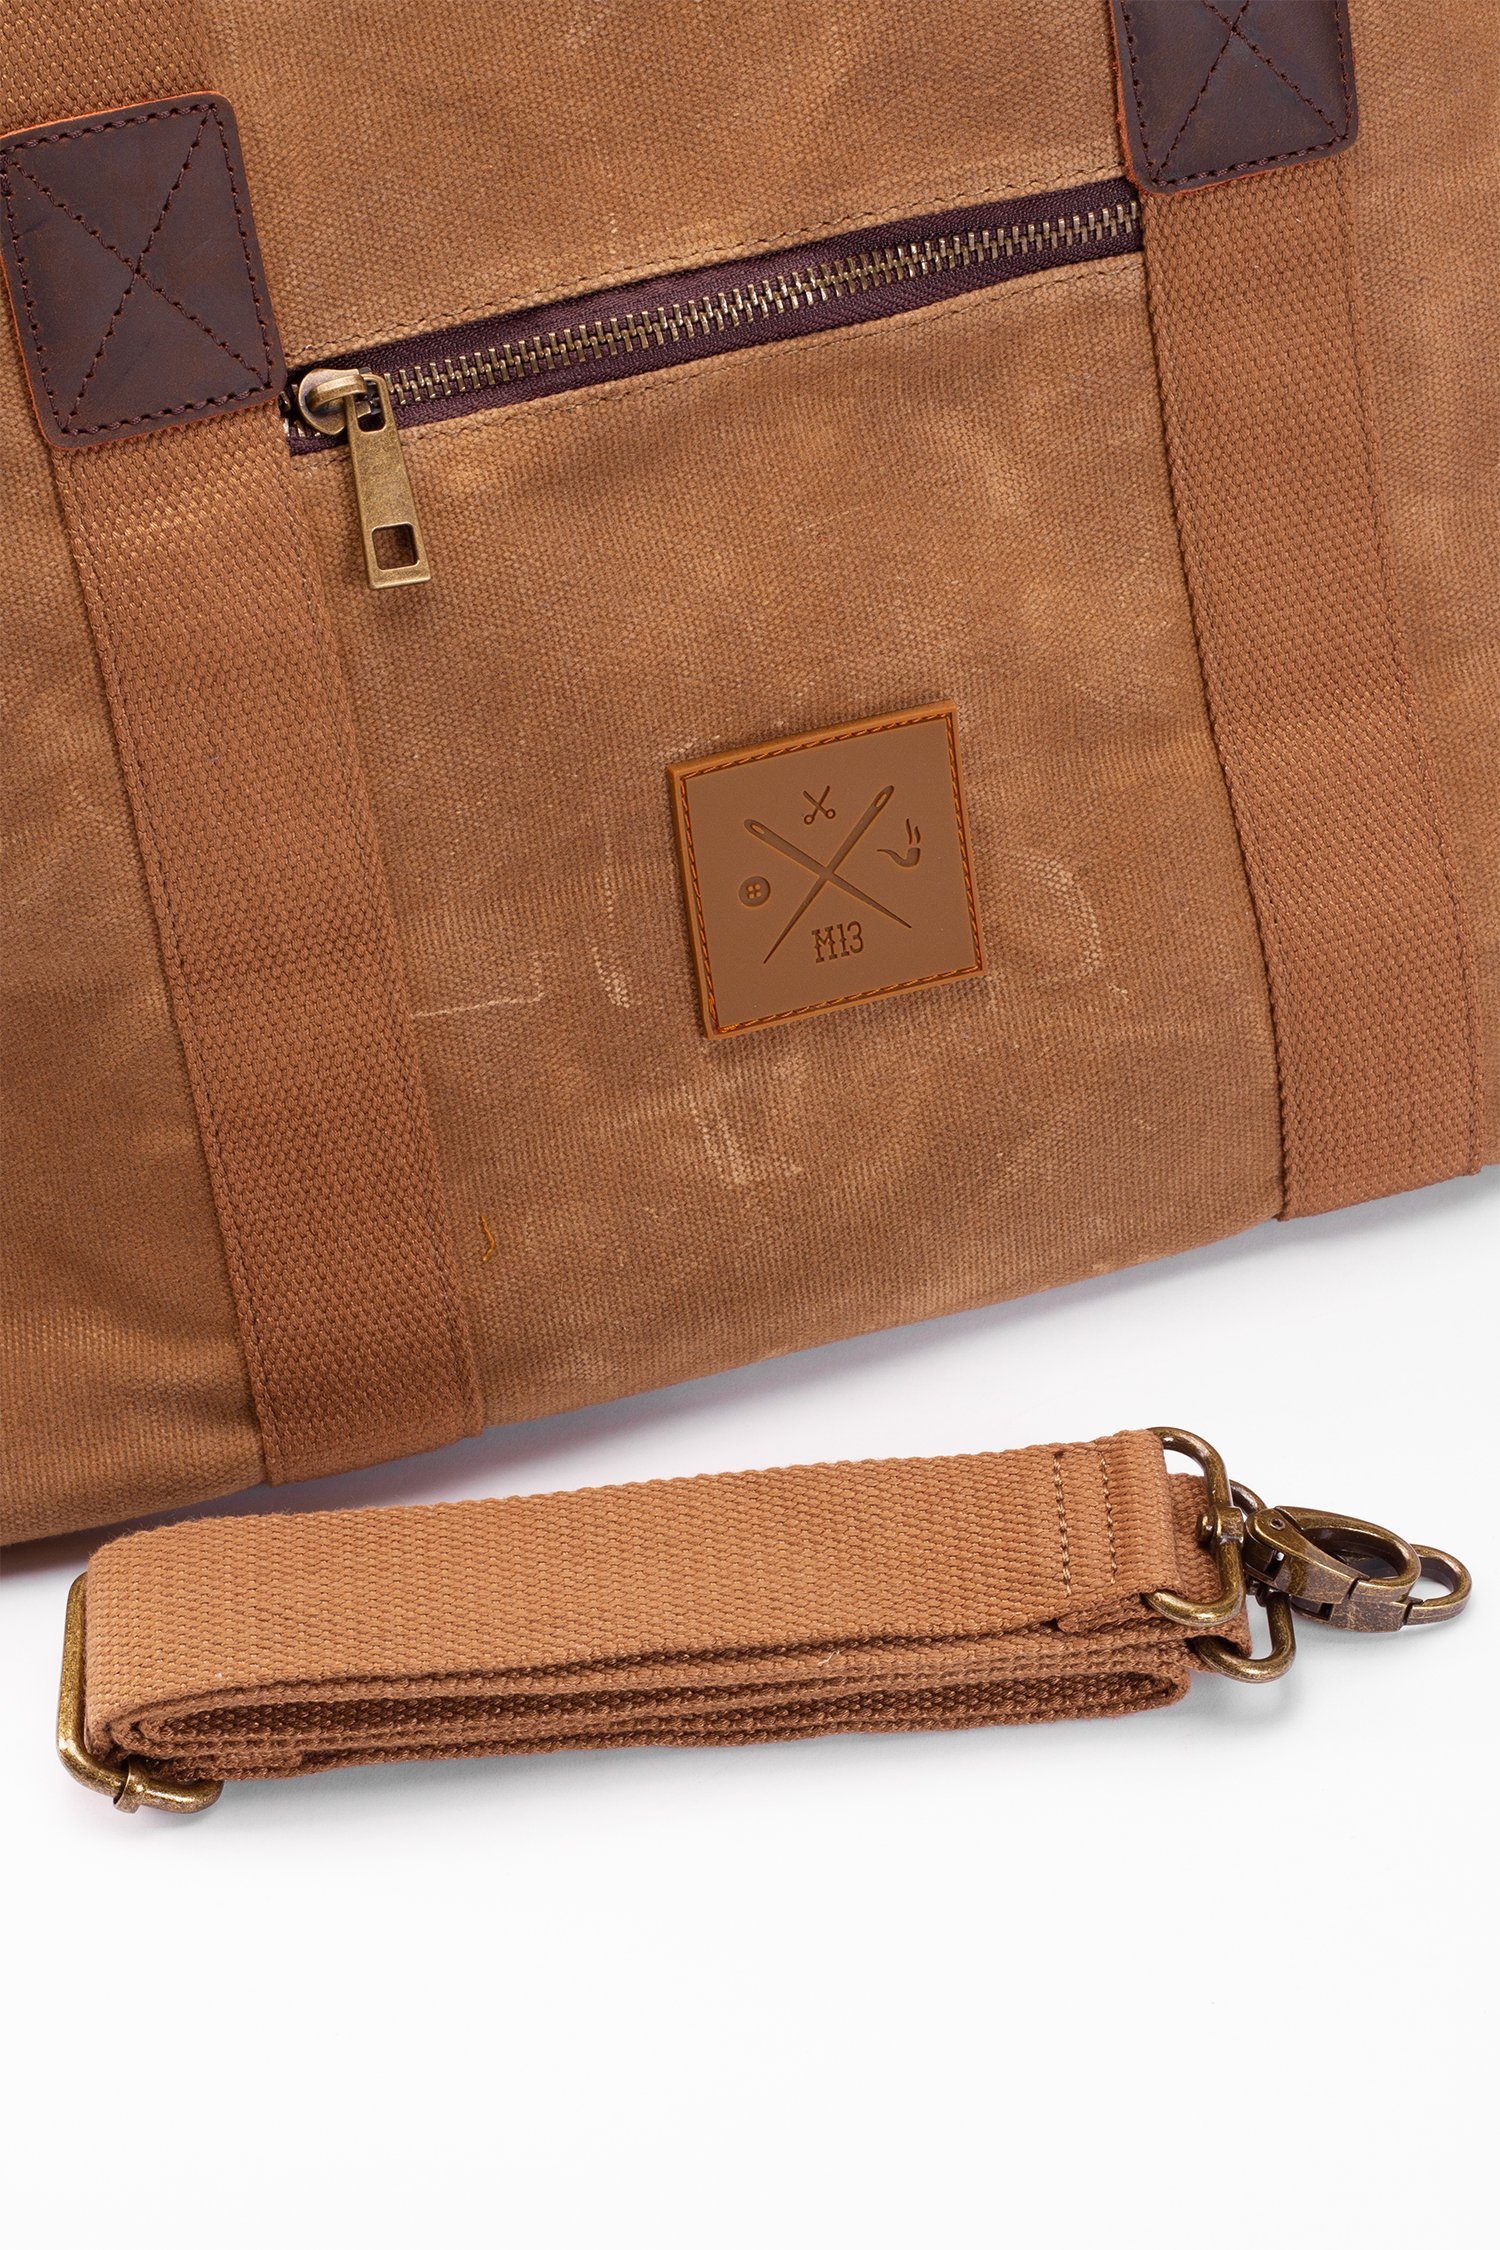 Sporttasche Canvas Baumwolle Weekender, 19L, - Duffel Bag Vintage Schultertasche, Reisetasche Manufaktur13